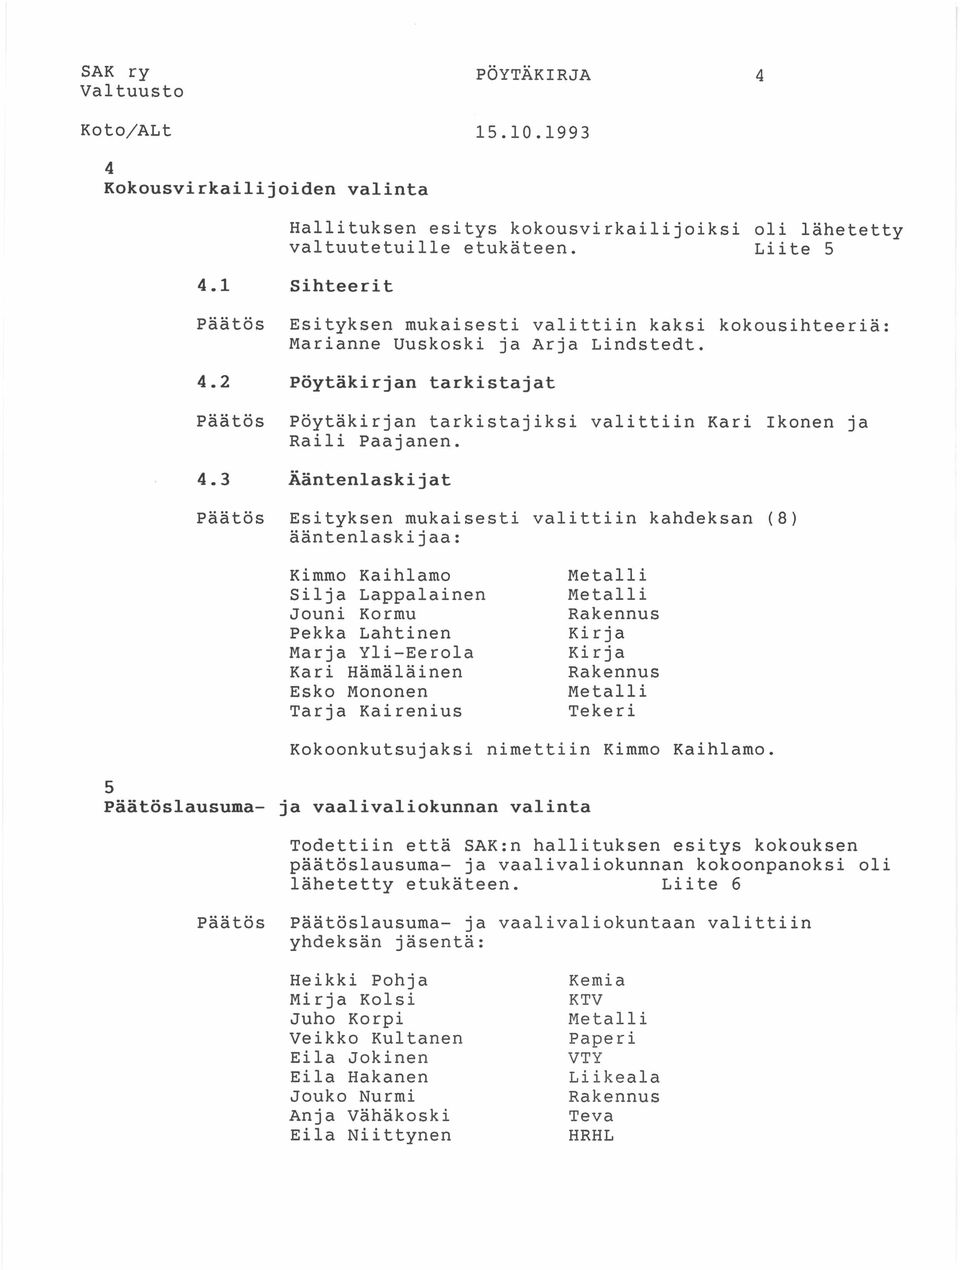 2 Pöytäkirjan tarkistajat Päätös Pöytäkirjan tarkistajiksi valittiin Kari Ikonen ja Raili Paajanen. 4.